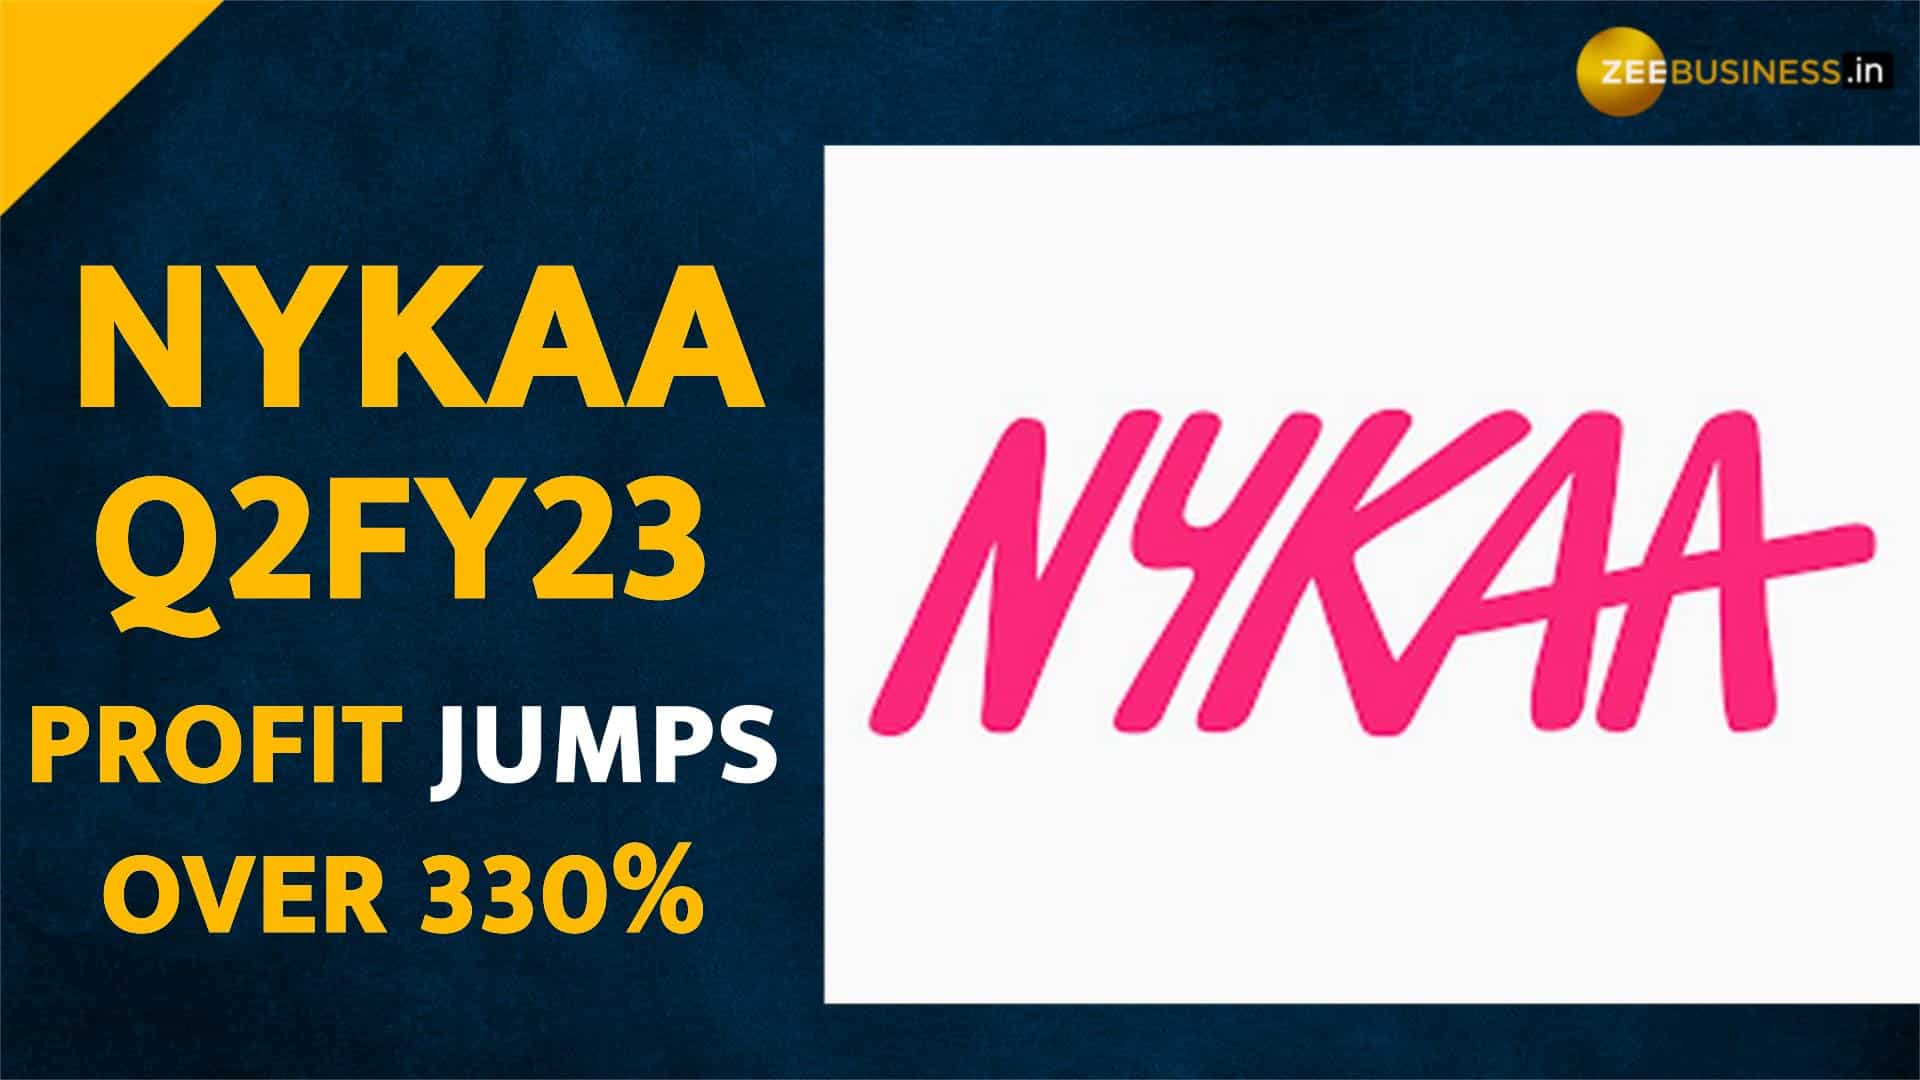 I found 3 amazing Nykaa products - YouTube